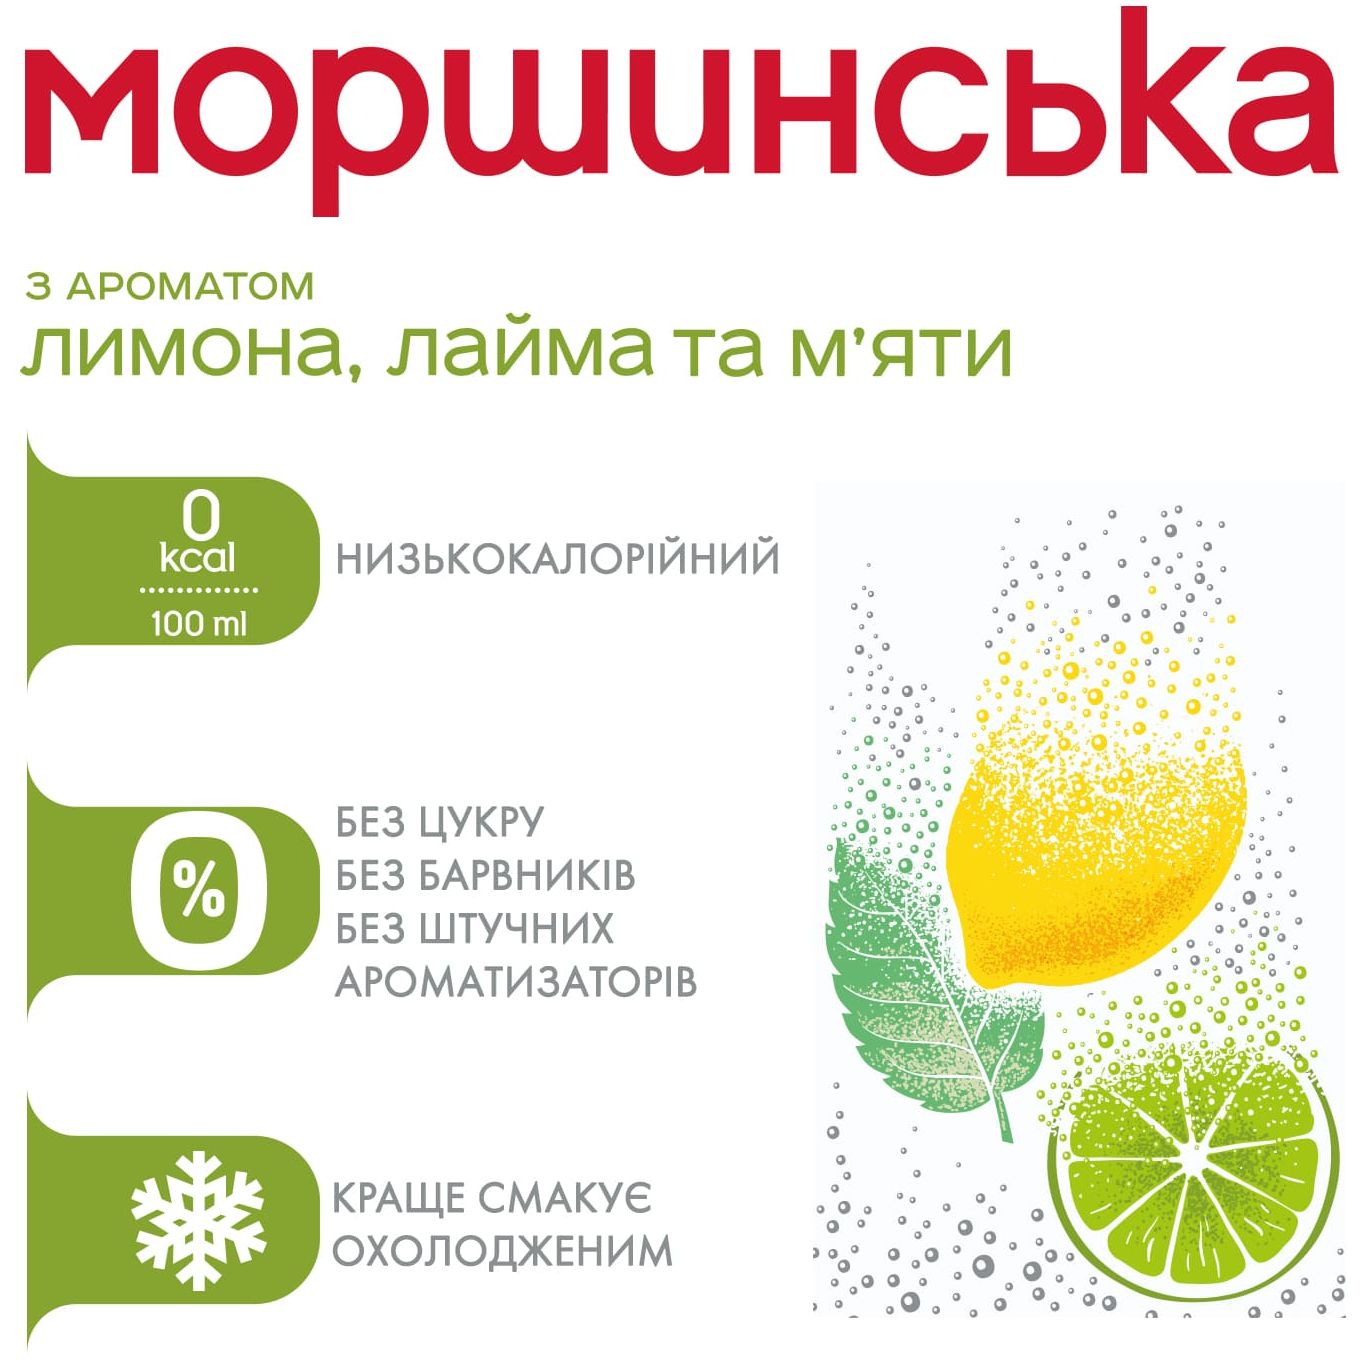 Напиток Моршинская с ароматом лимона, лайма и мяты сильногазированный 1.5 л - фото 4